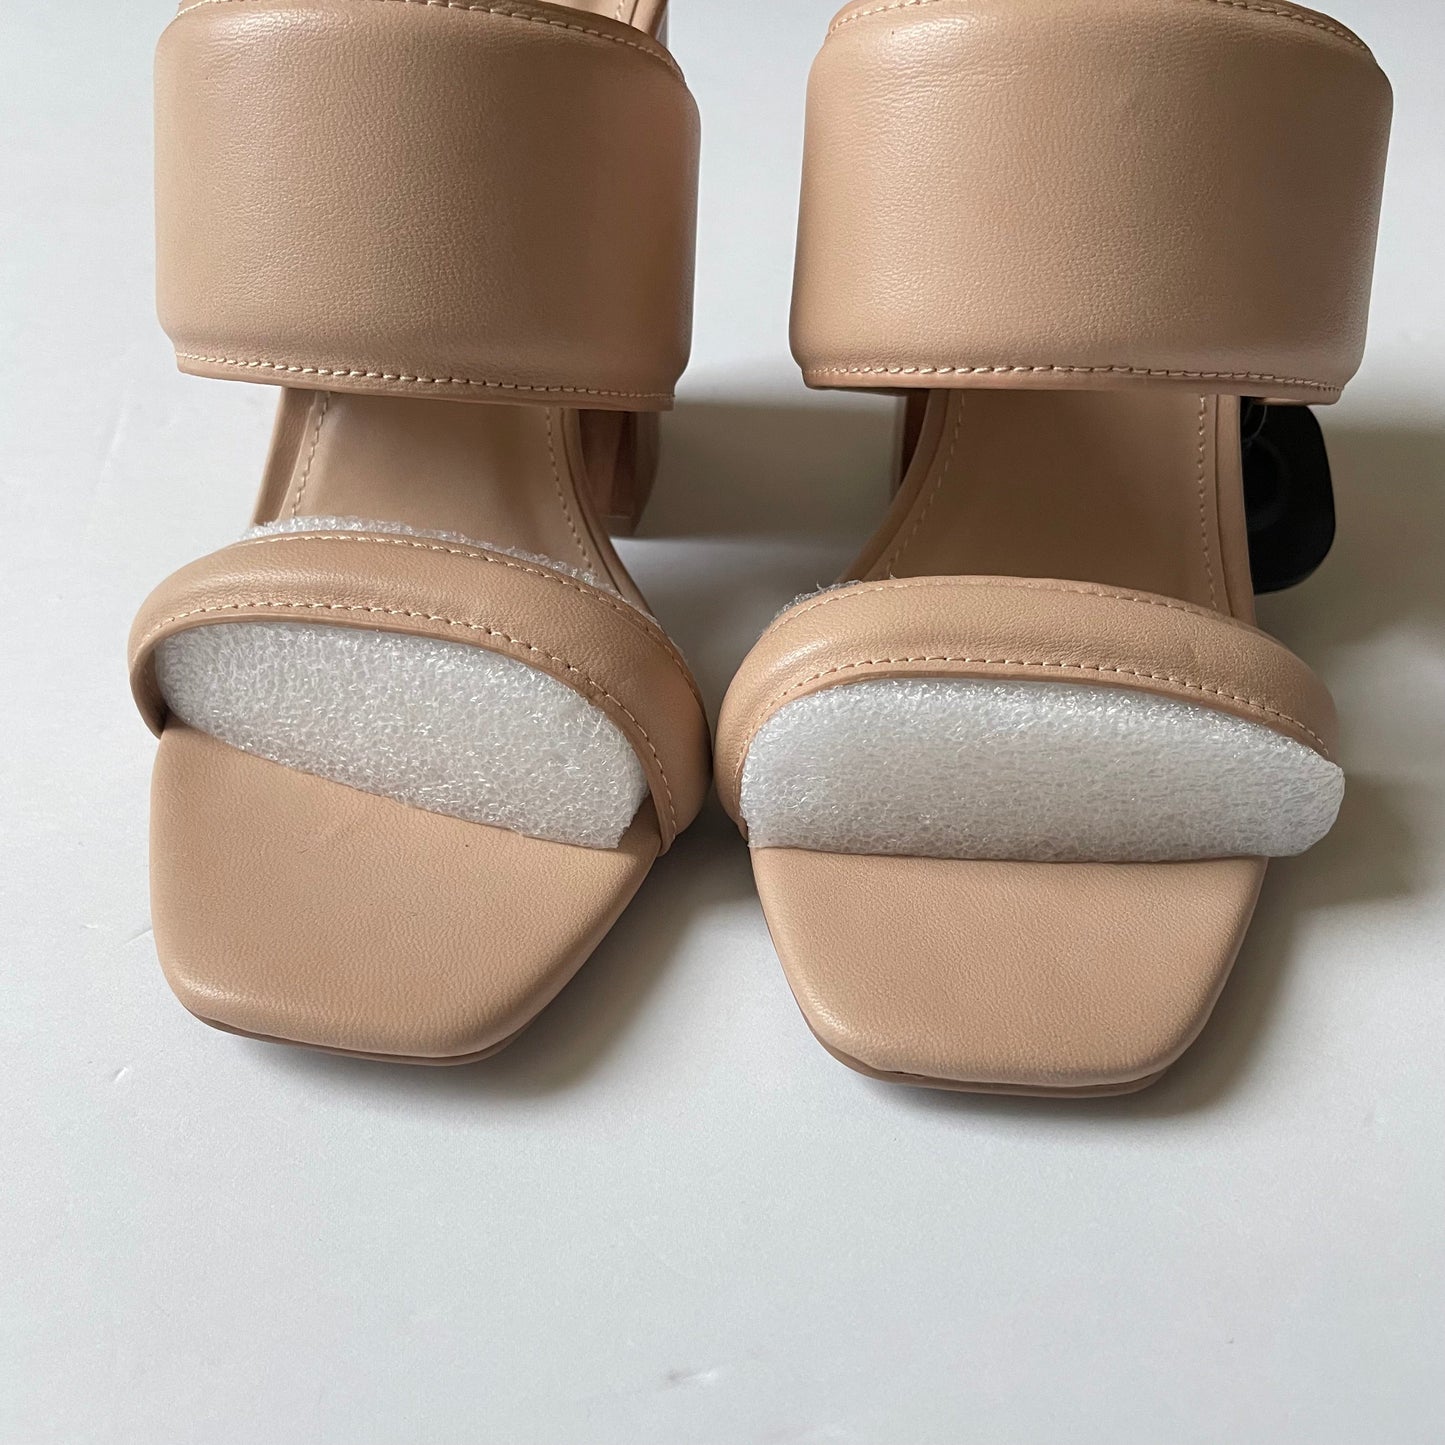 Tan Shoes Heels Block Qupid, Size 8